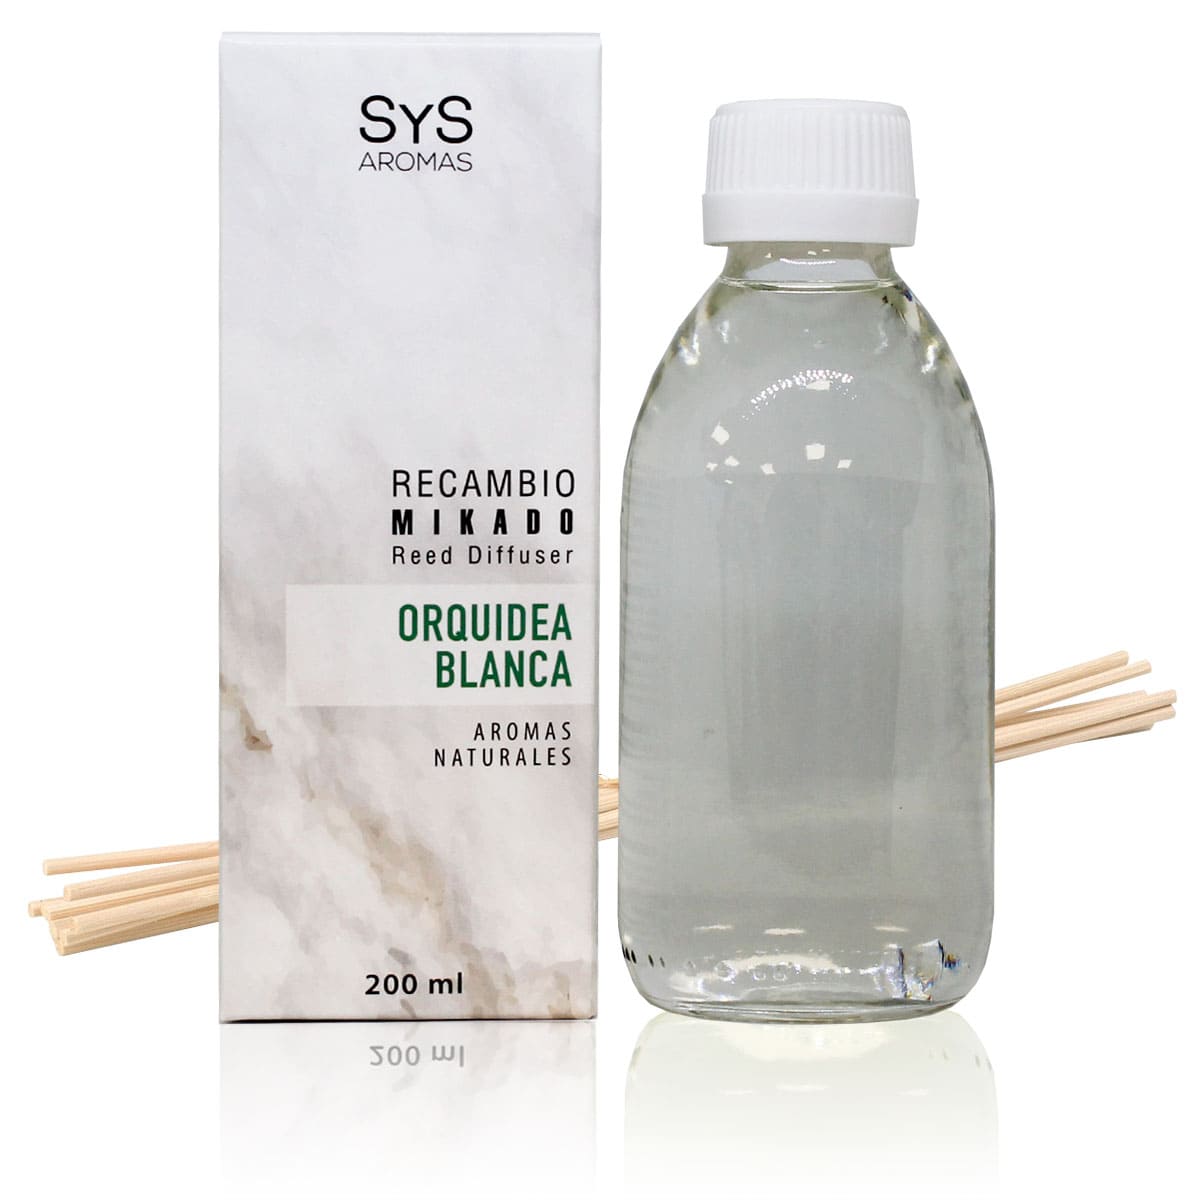 Comprar Recambio Mikado SyS Orquidea Blanca 200ml + Palos, SYS Aromas